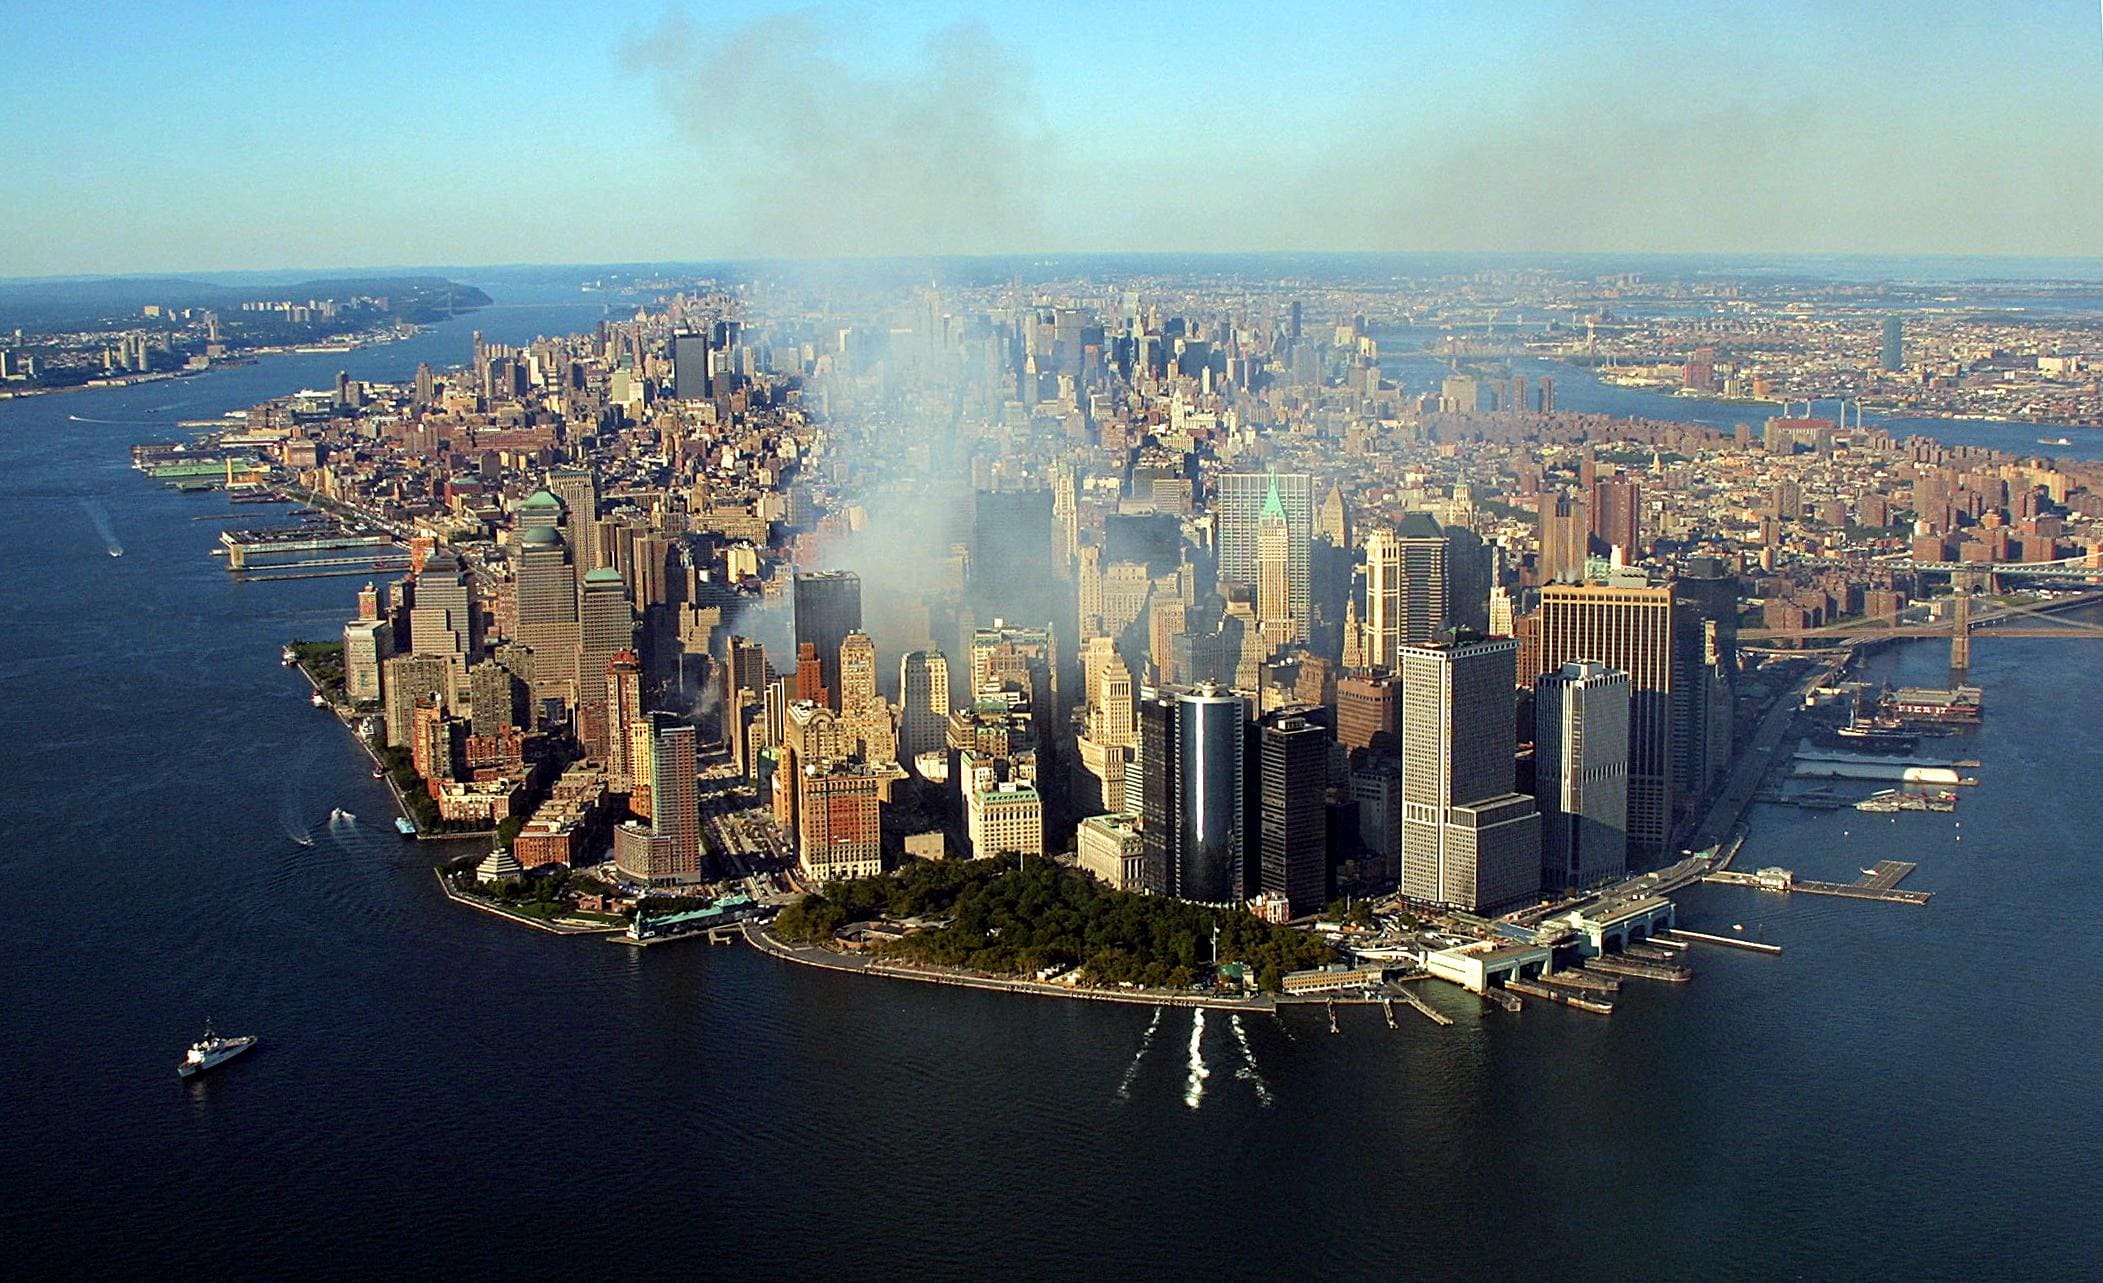 עשן מיתמר בניו יורק, כמה ימים אחרי הפיגוע במגדלי התאומים, 15 בספטמבר 2001 (צילום: KEITH MEYERS / POOL / AFP)